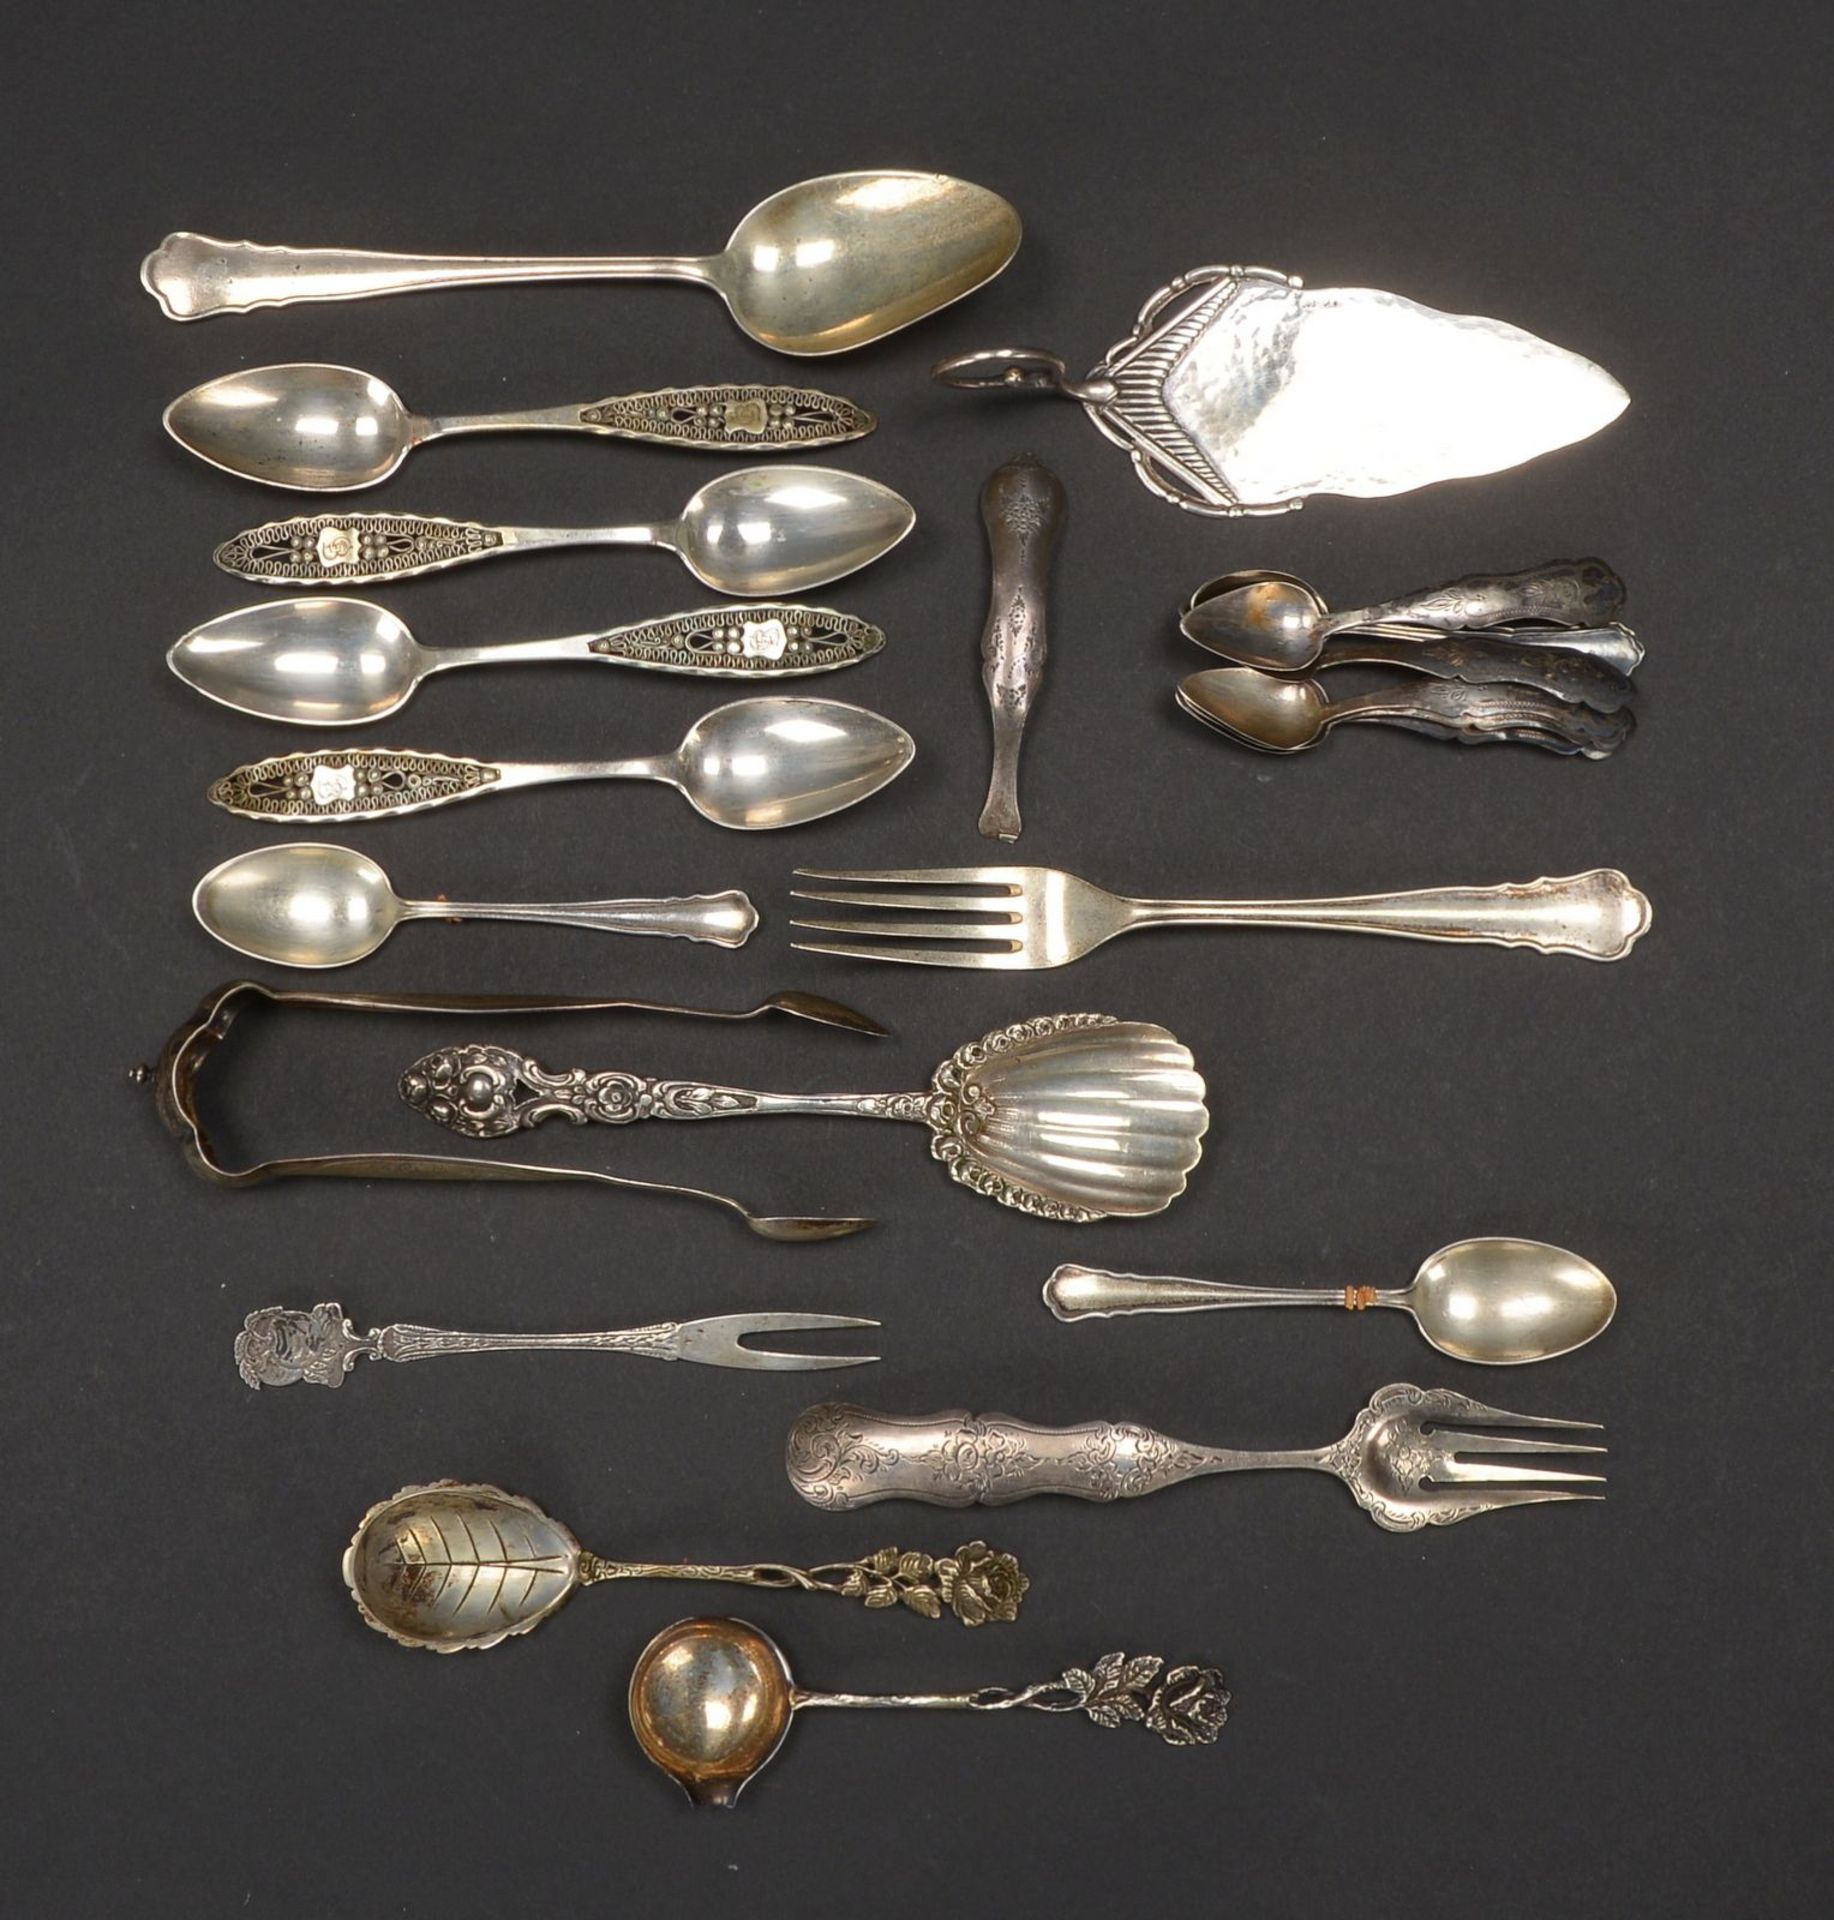 Tafelsilber-Lot, 800 Silber und 835 Silber, unterschiedliche Funktionen und Ausf&uuml;hrungen; Gesam